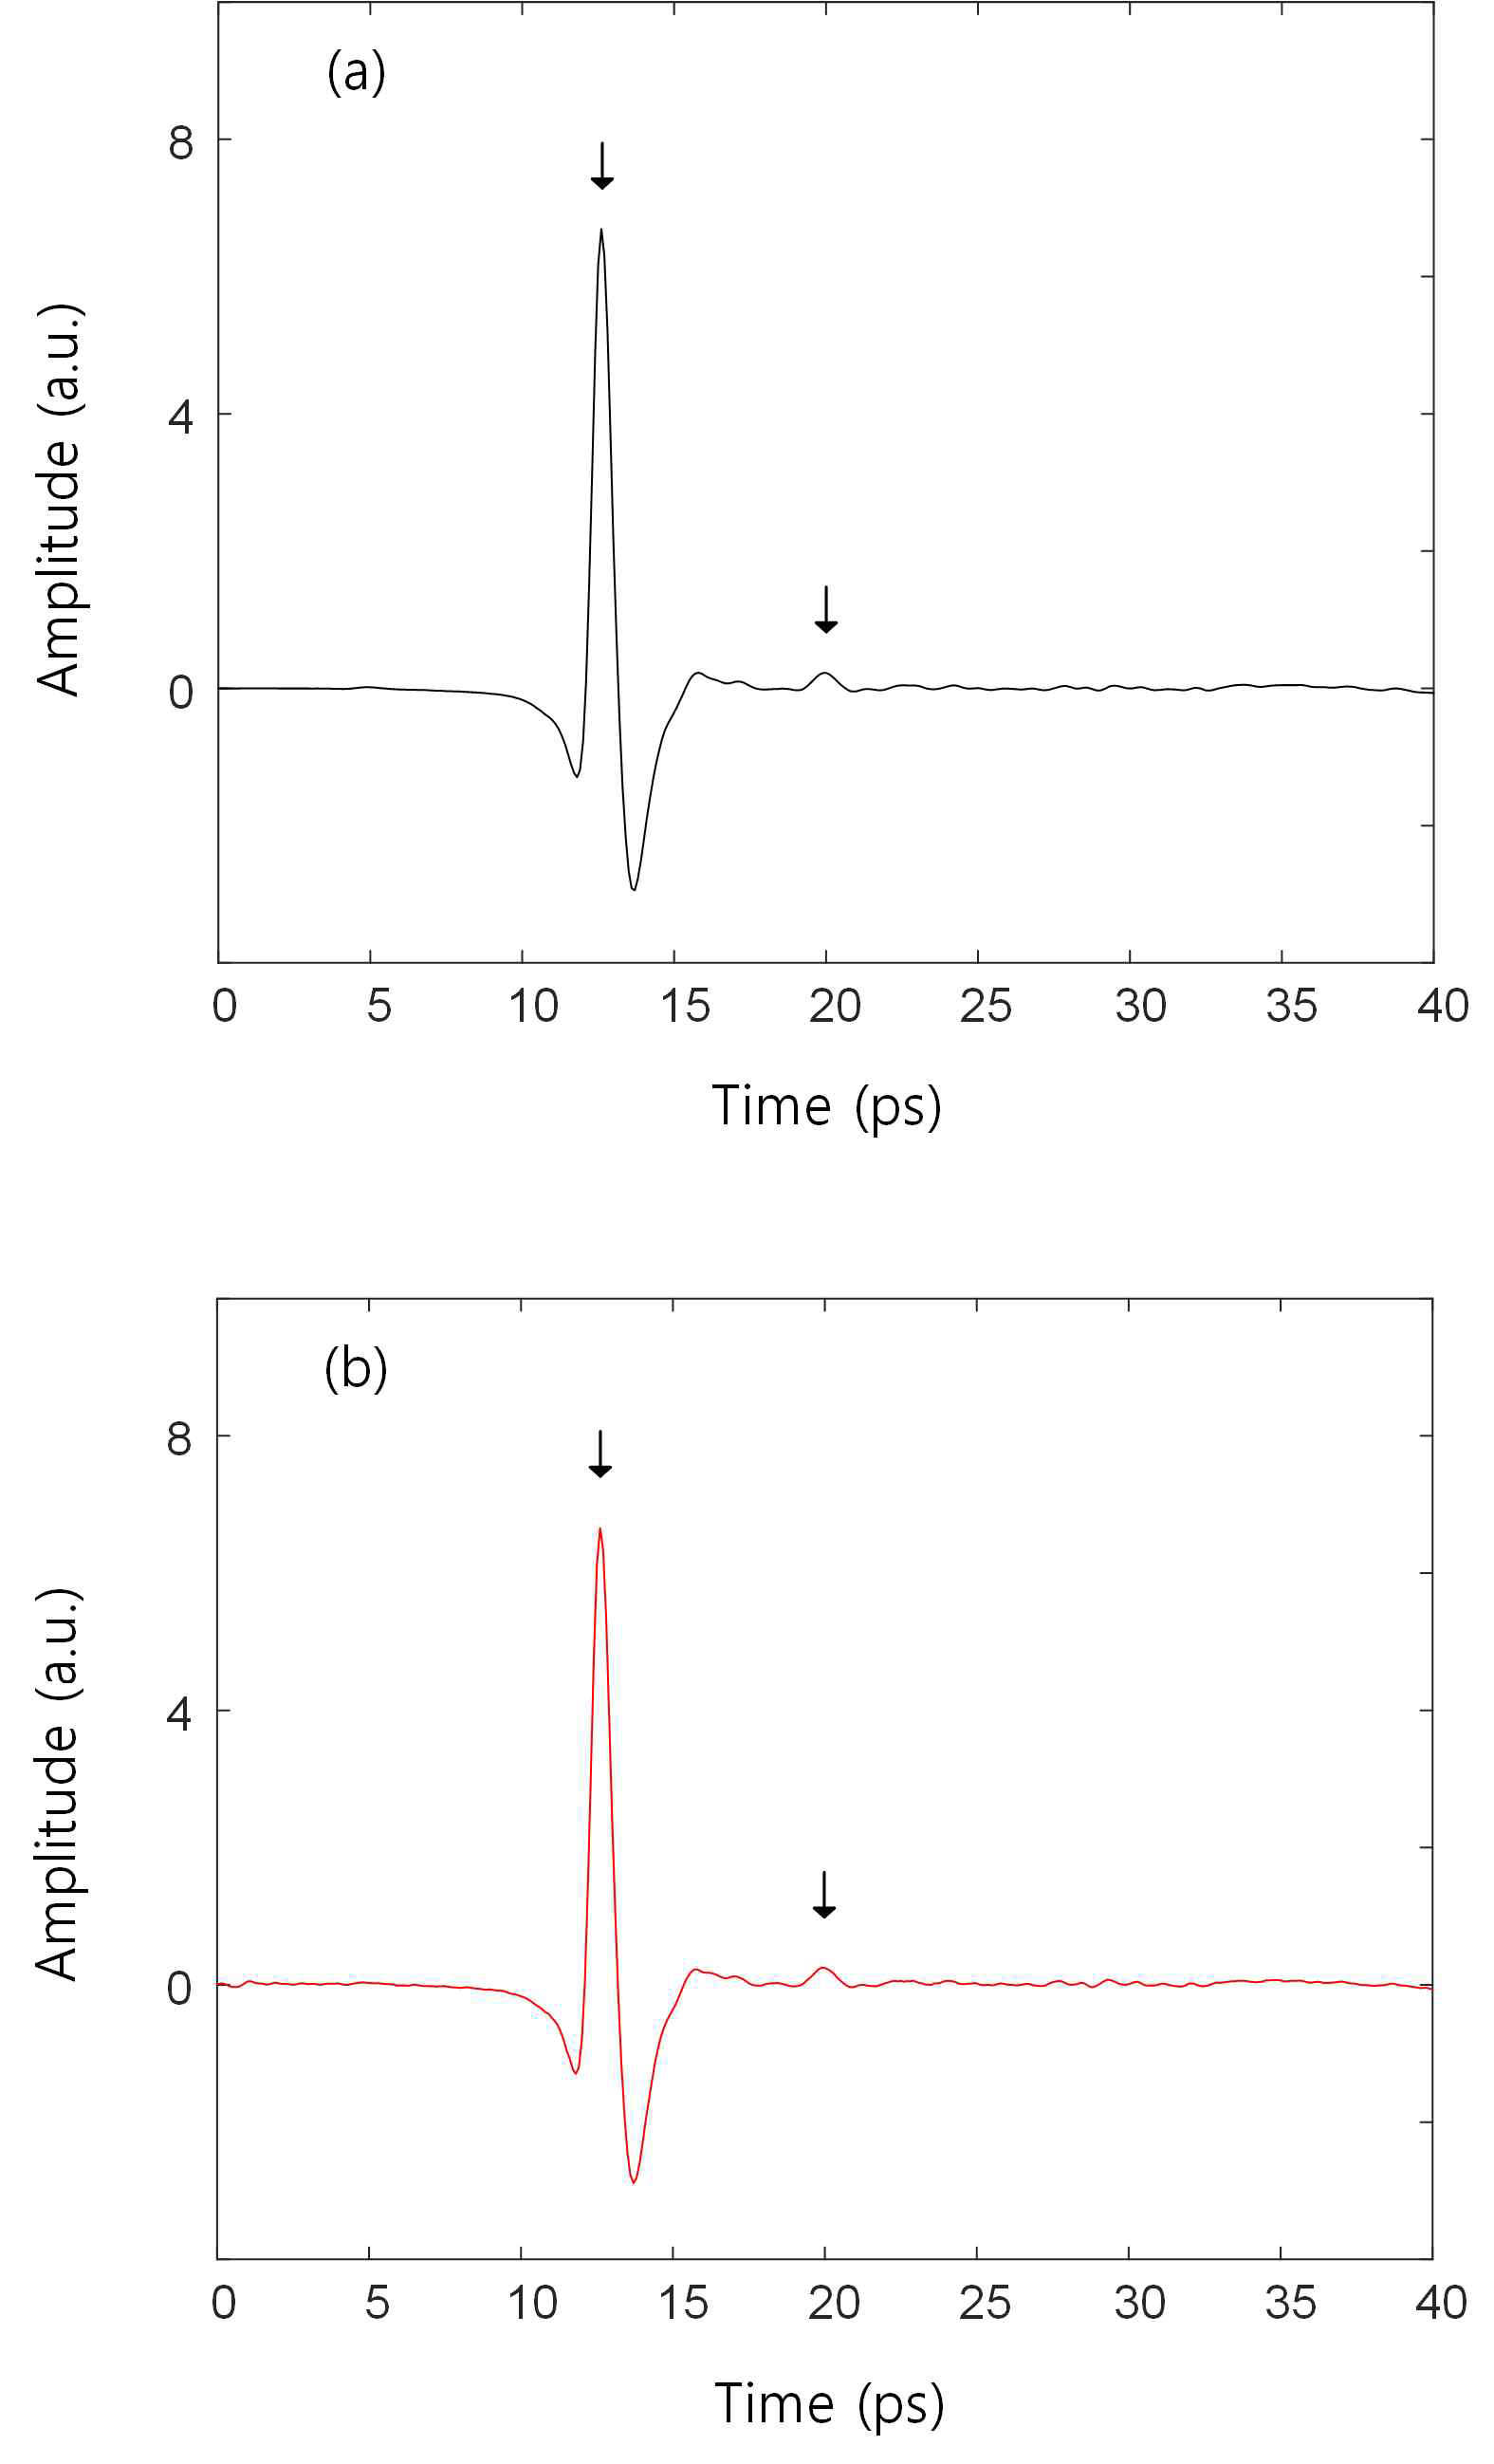 통제된 환경에서의 샘플 B의 신호와 (a) 일반적인 대기에서 측정한 신호를 이용해 복구된 신호 (b)